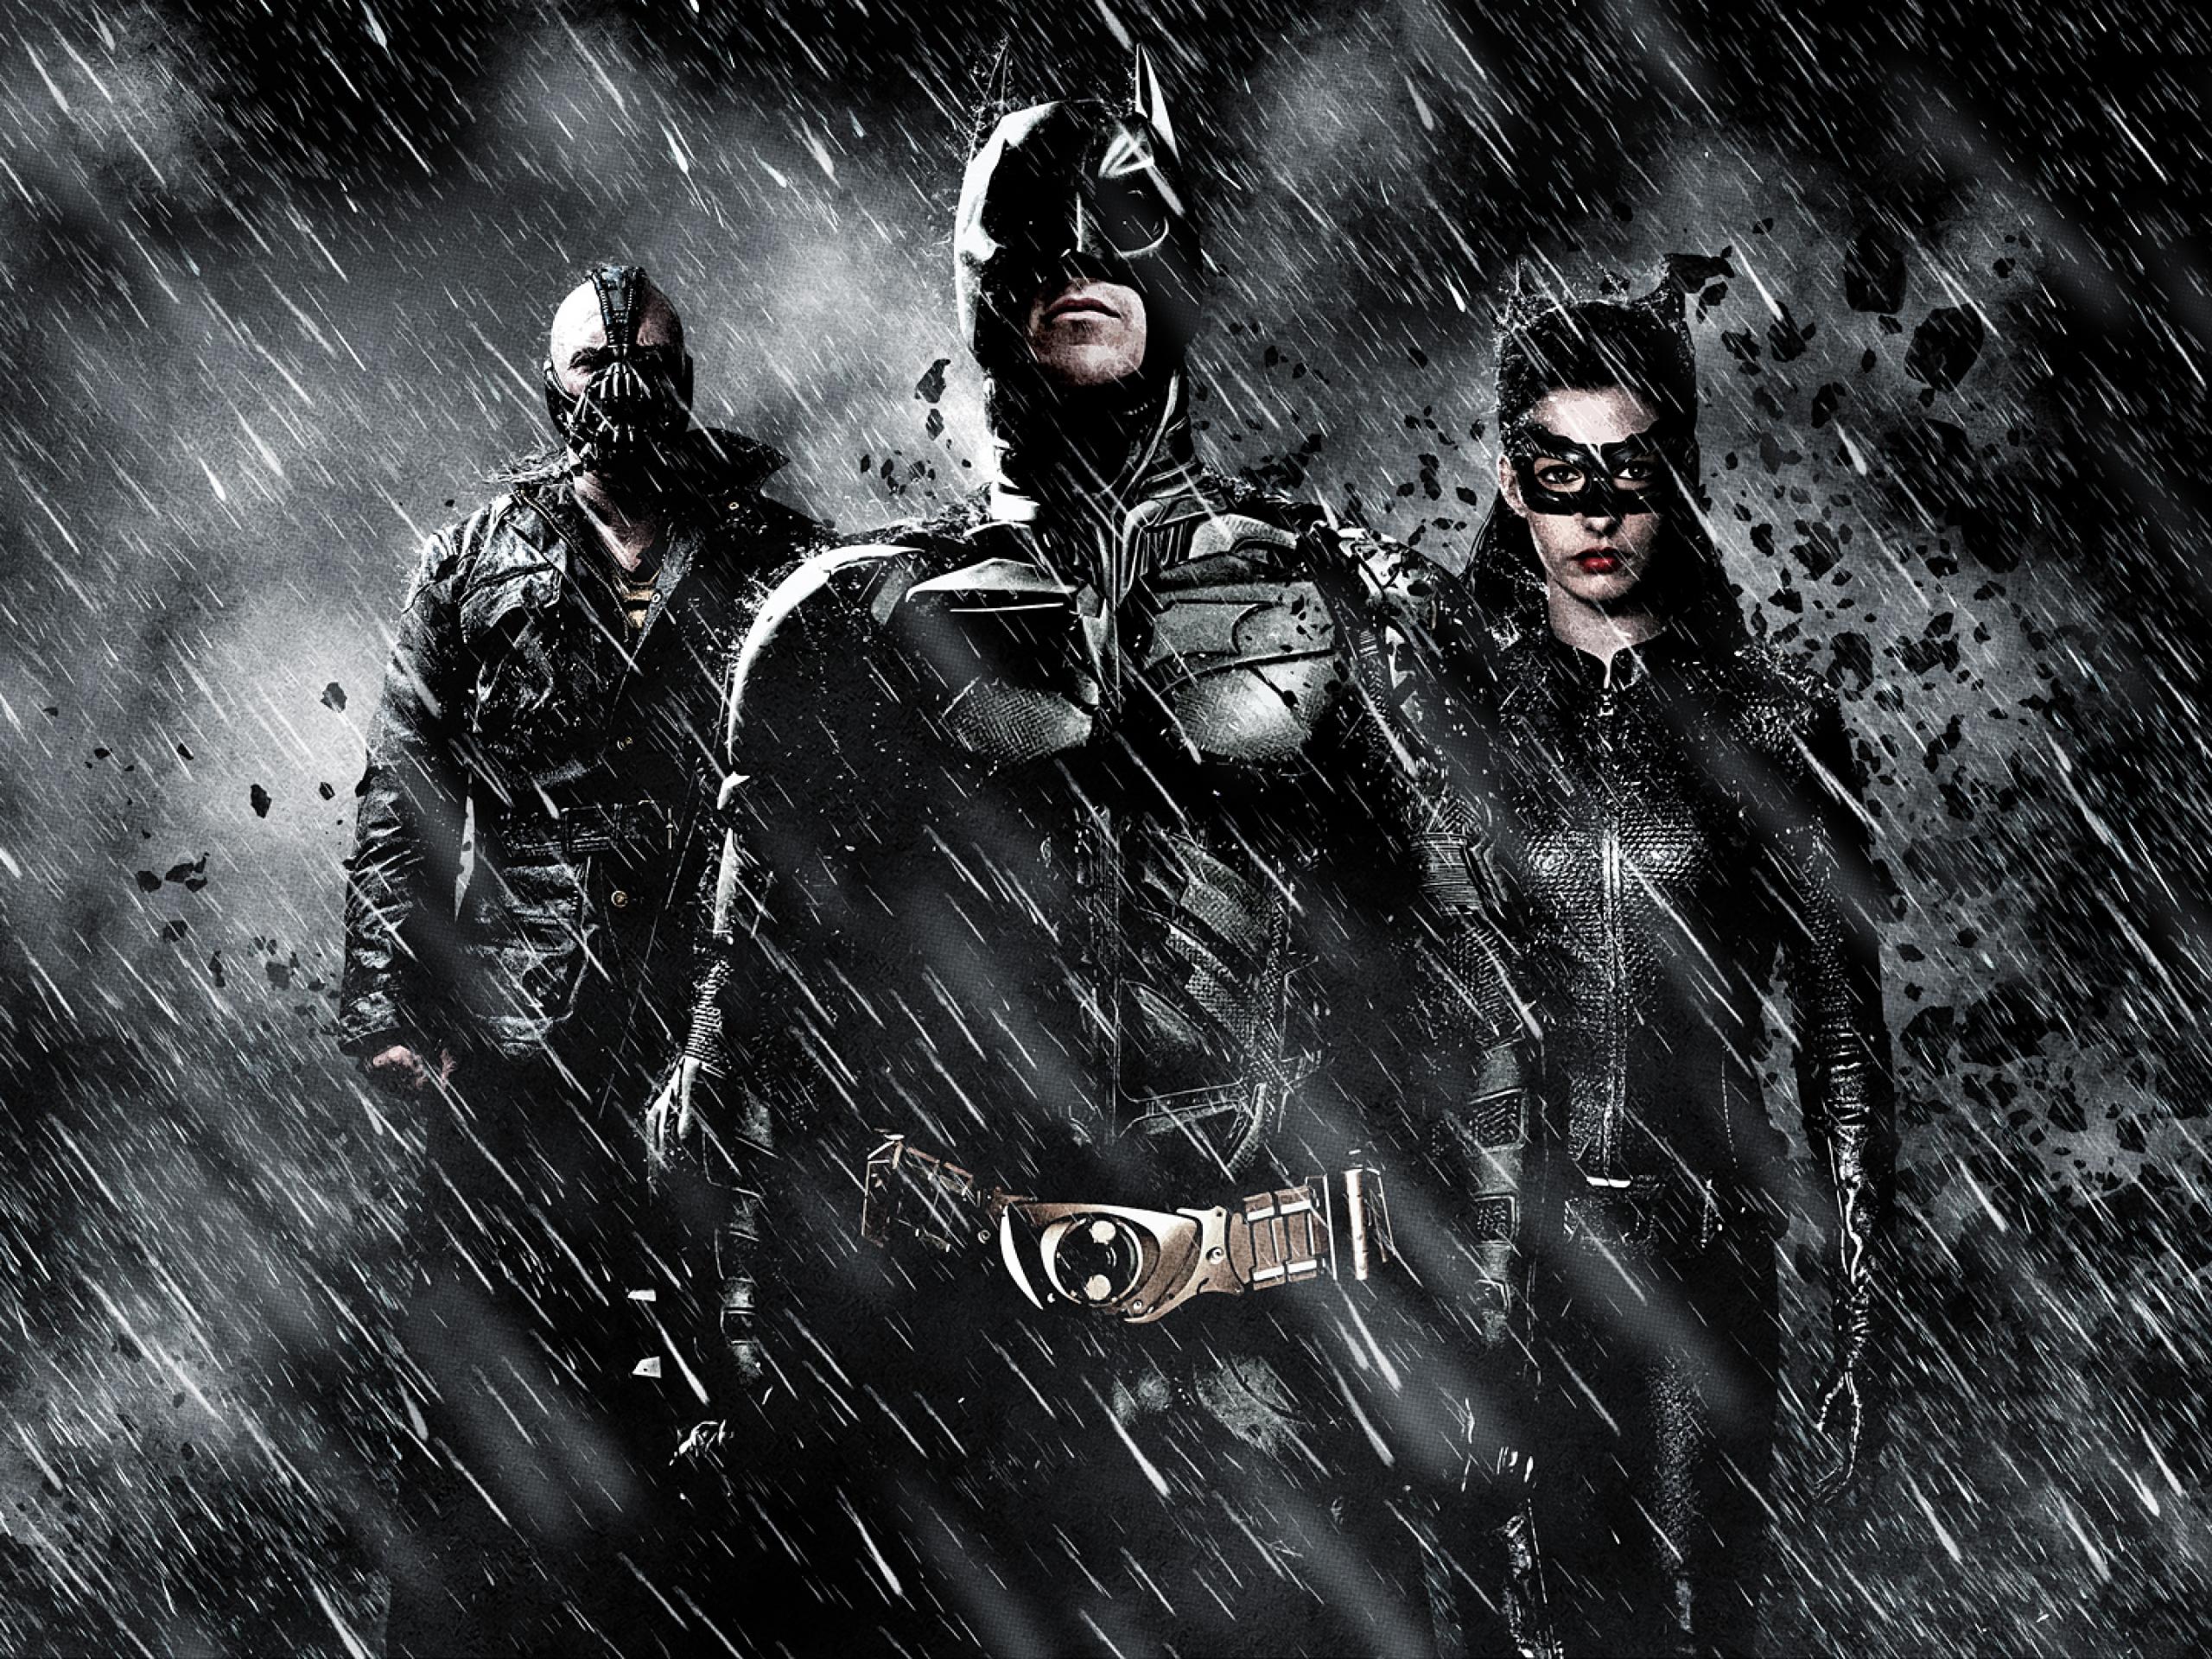 Cinema: As Melhores Salas de Cinema Para Ver Batman em SP